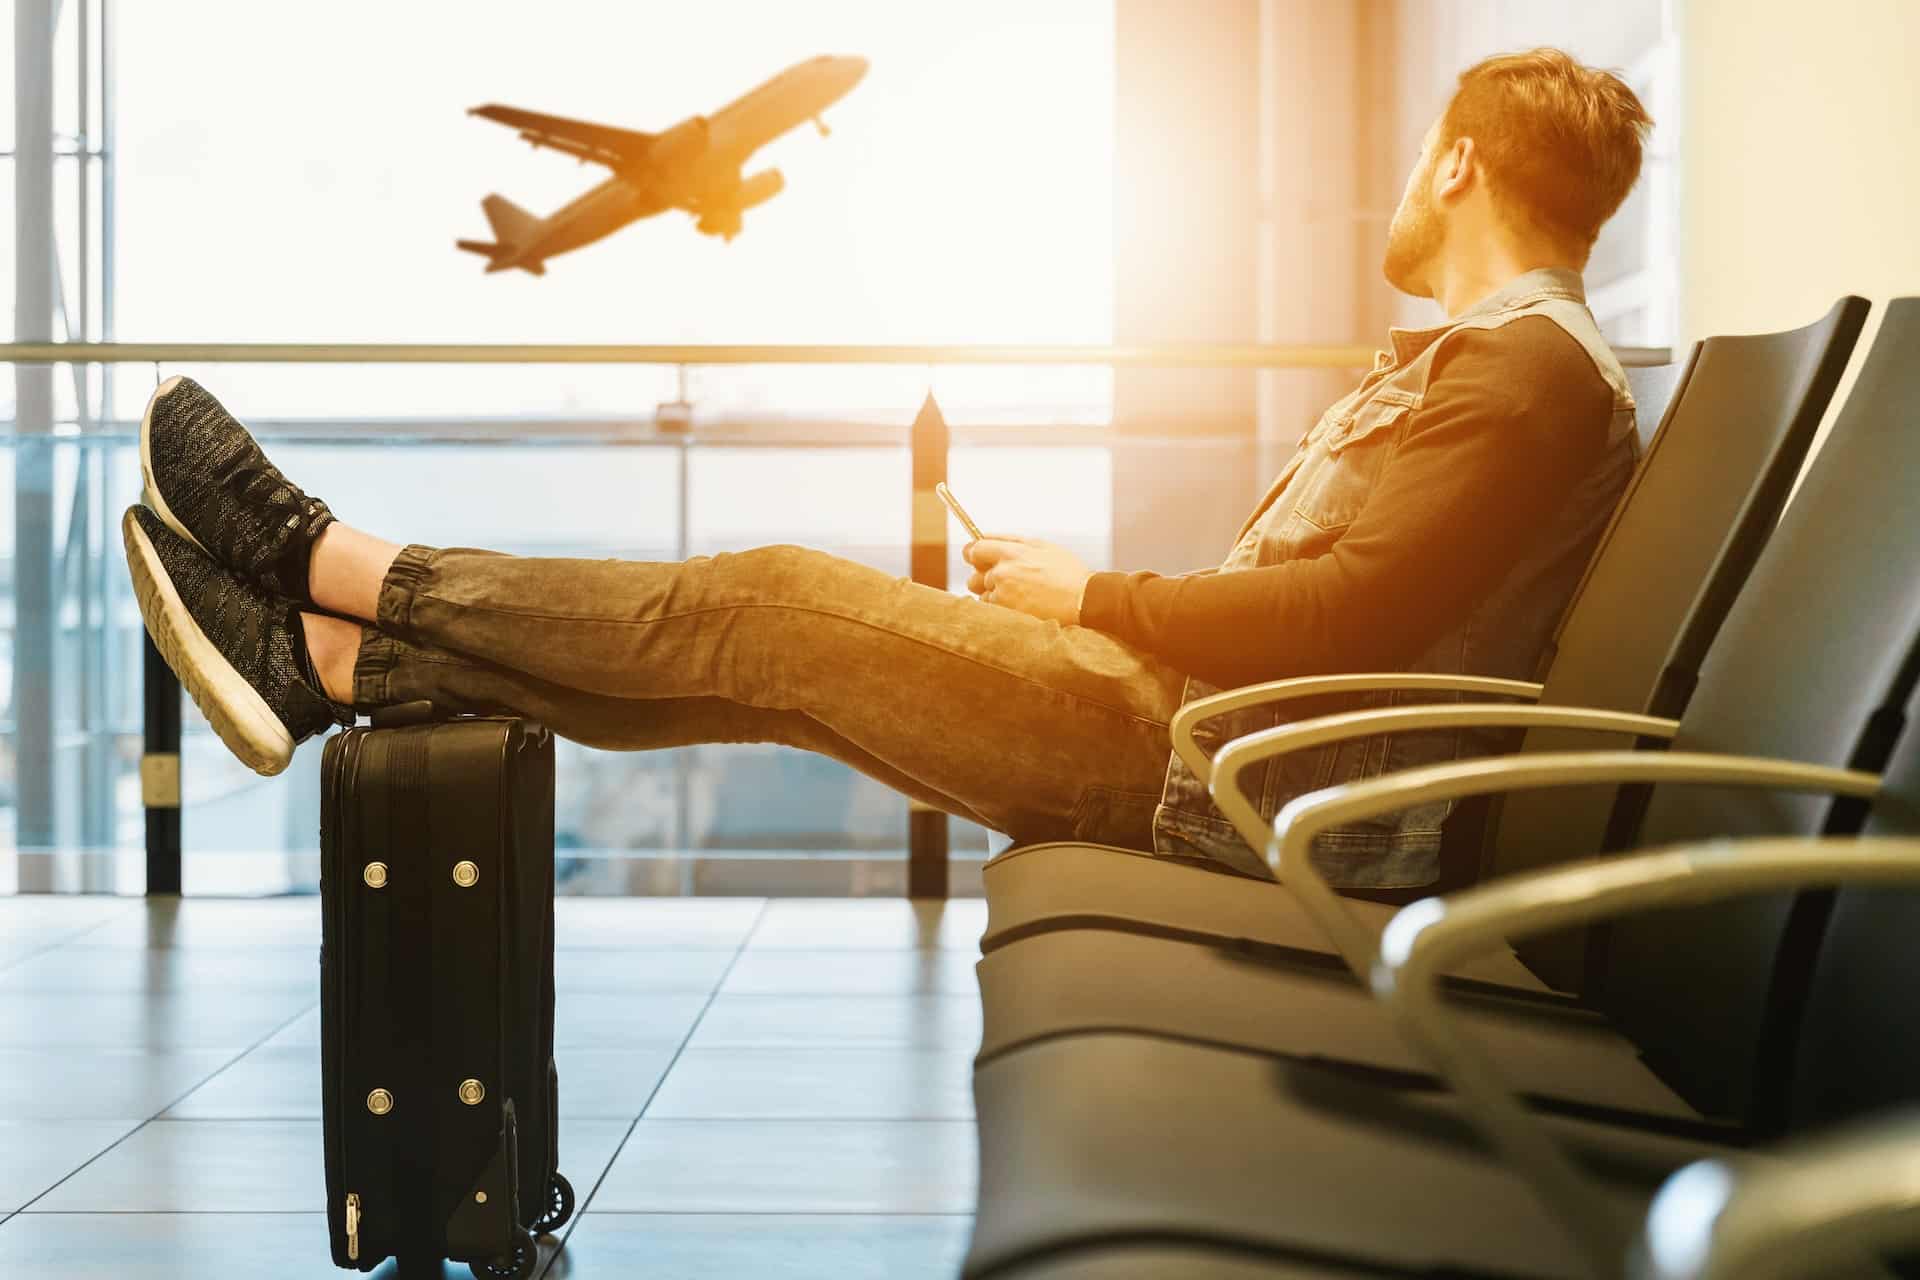 Un homme assis attend son avion les pieds posés sur sa valise